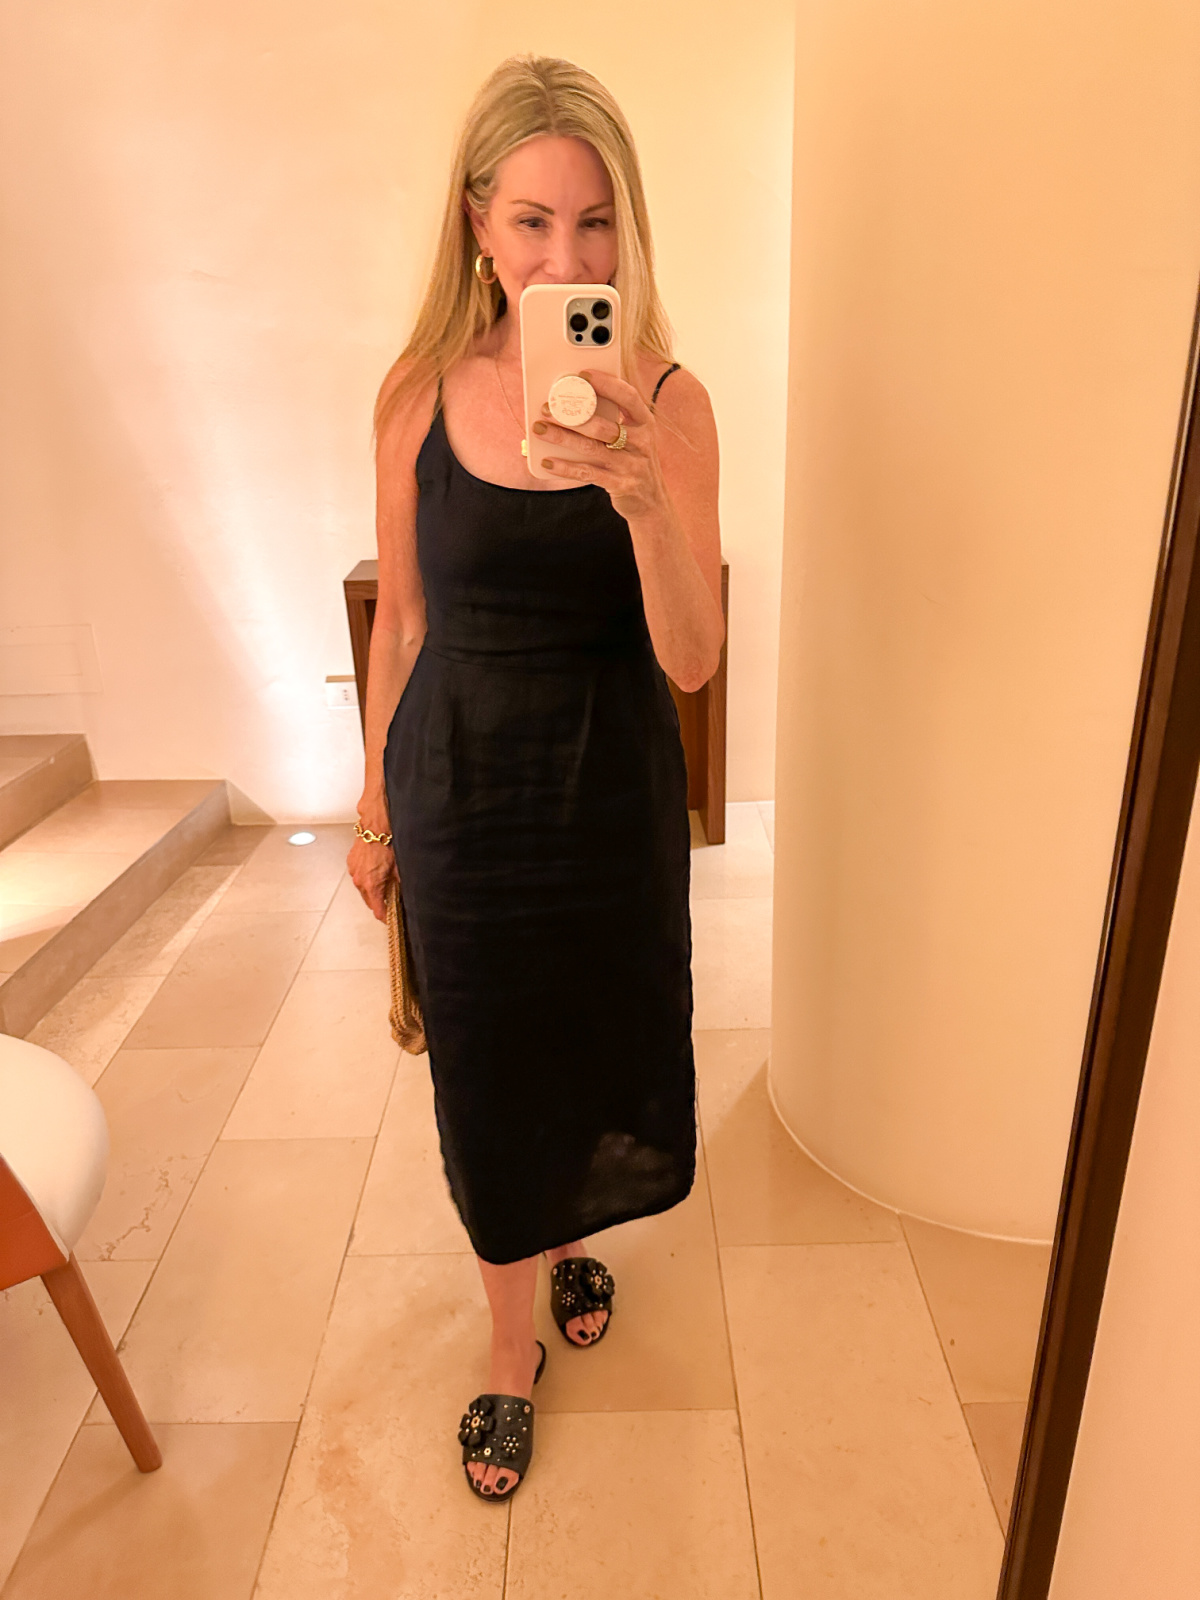 Woman wearing navy blue midi dress taking mirror selfie.